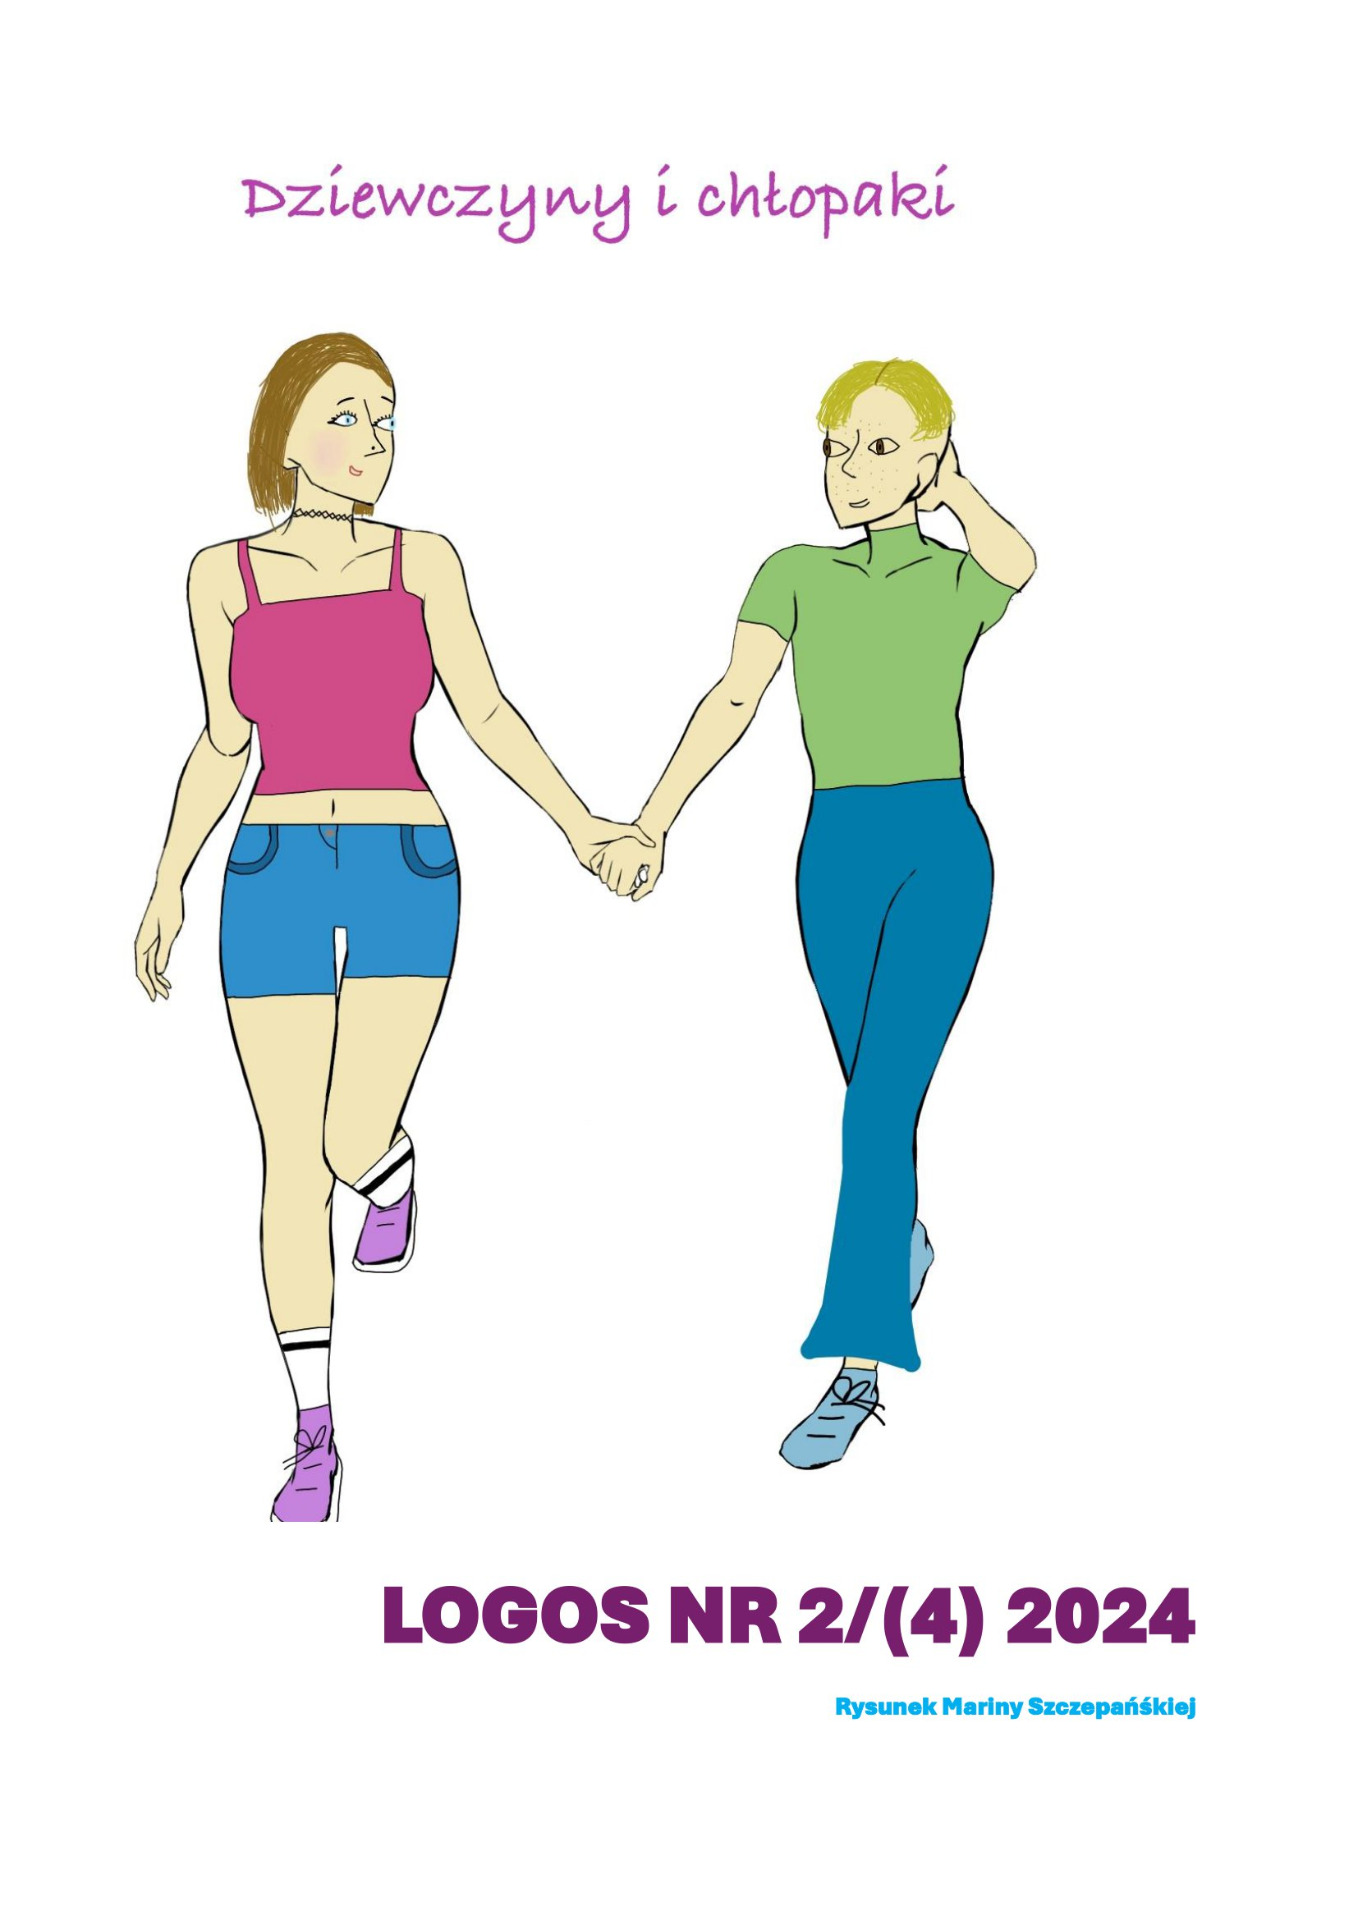 LOGOS - Dziewczyny i chłopaki - Obrazek 1